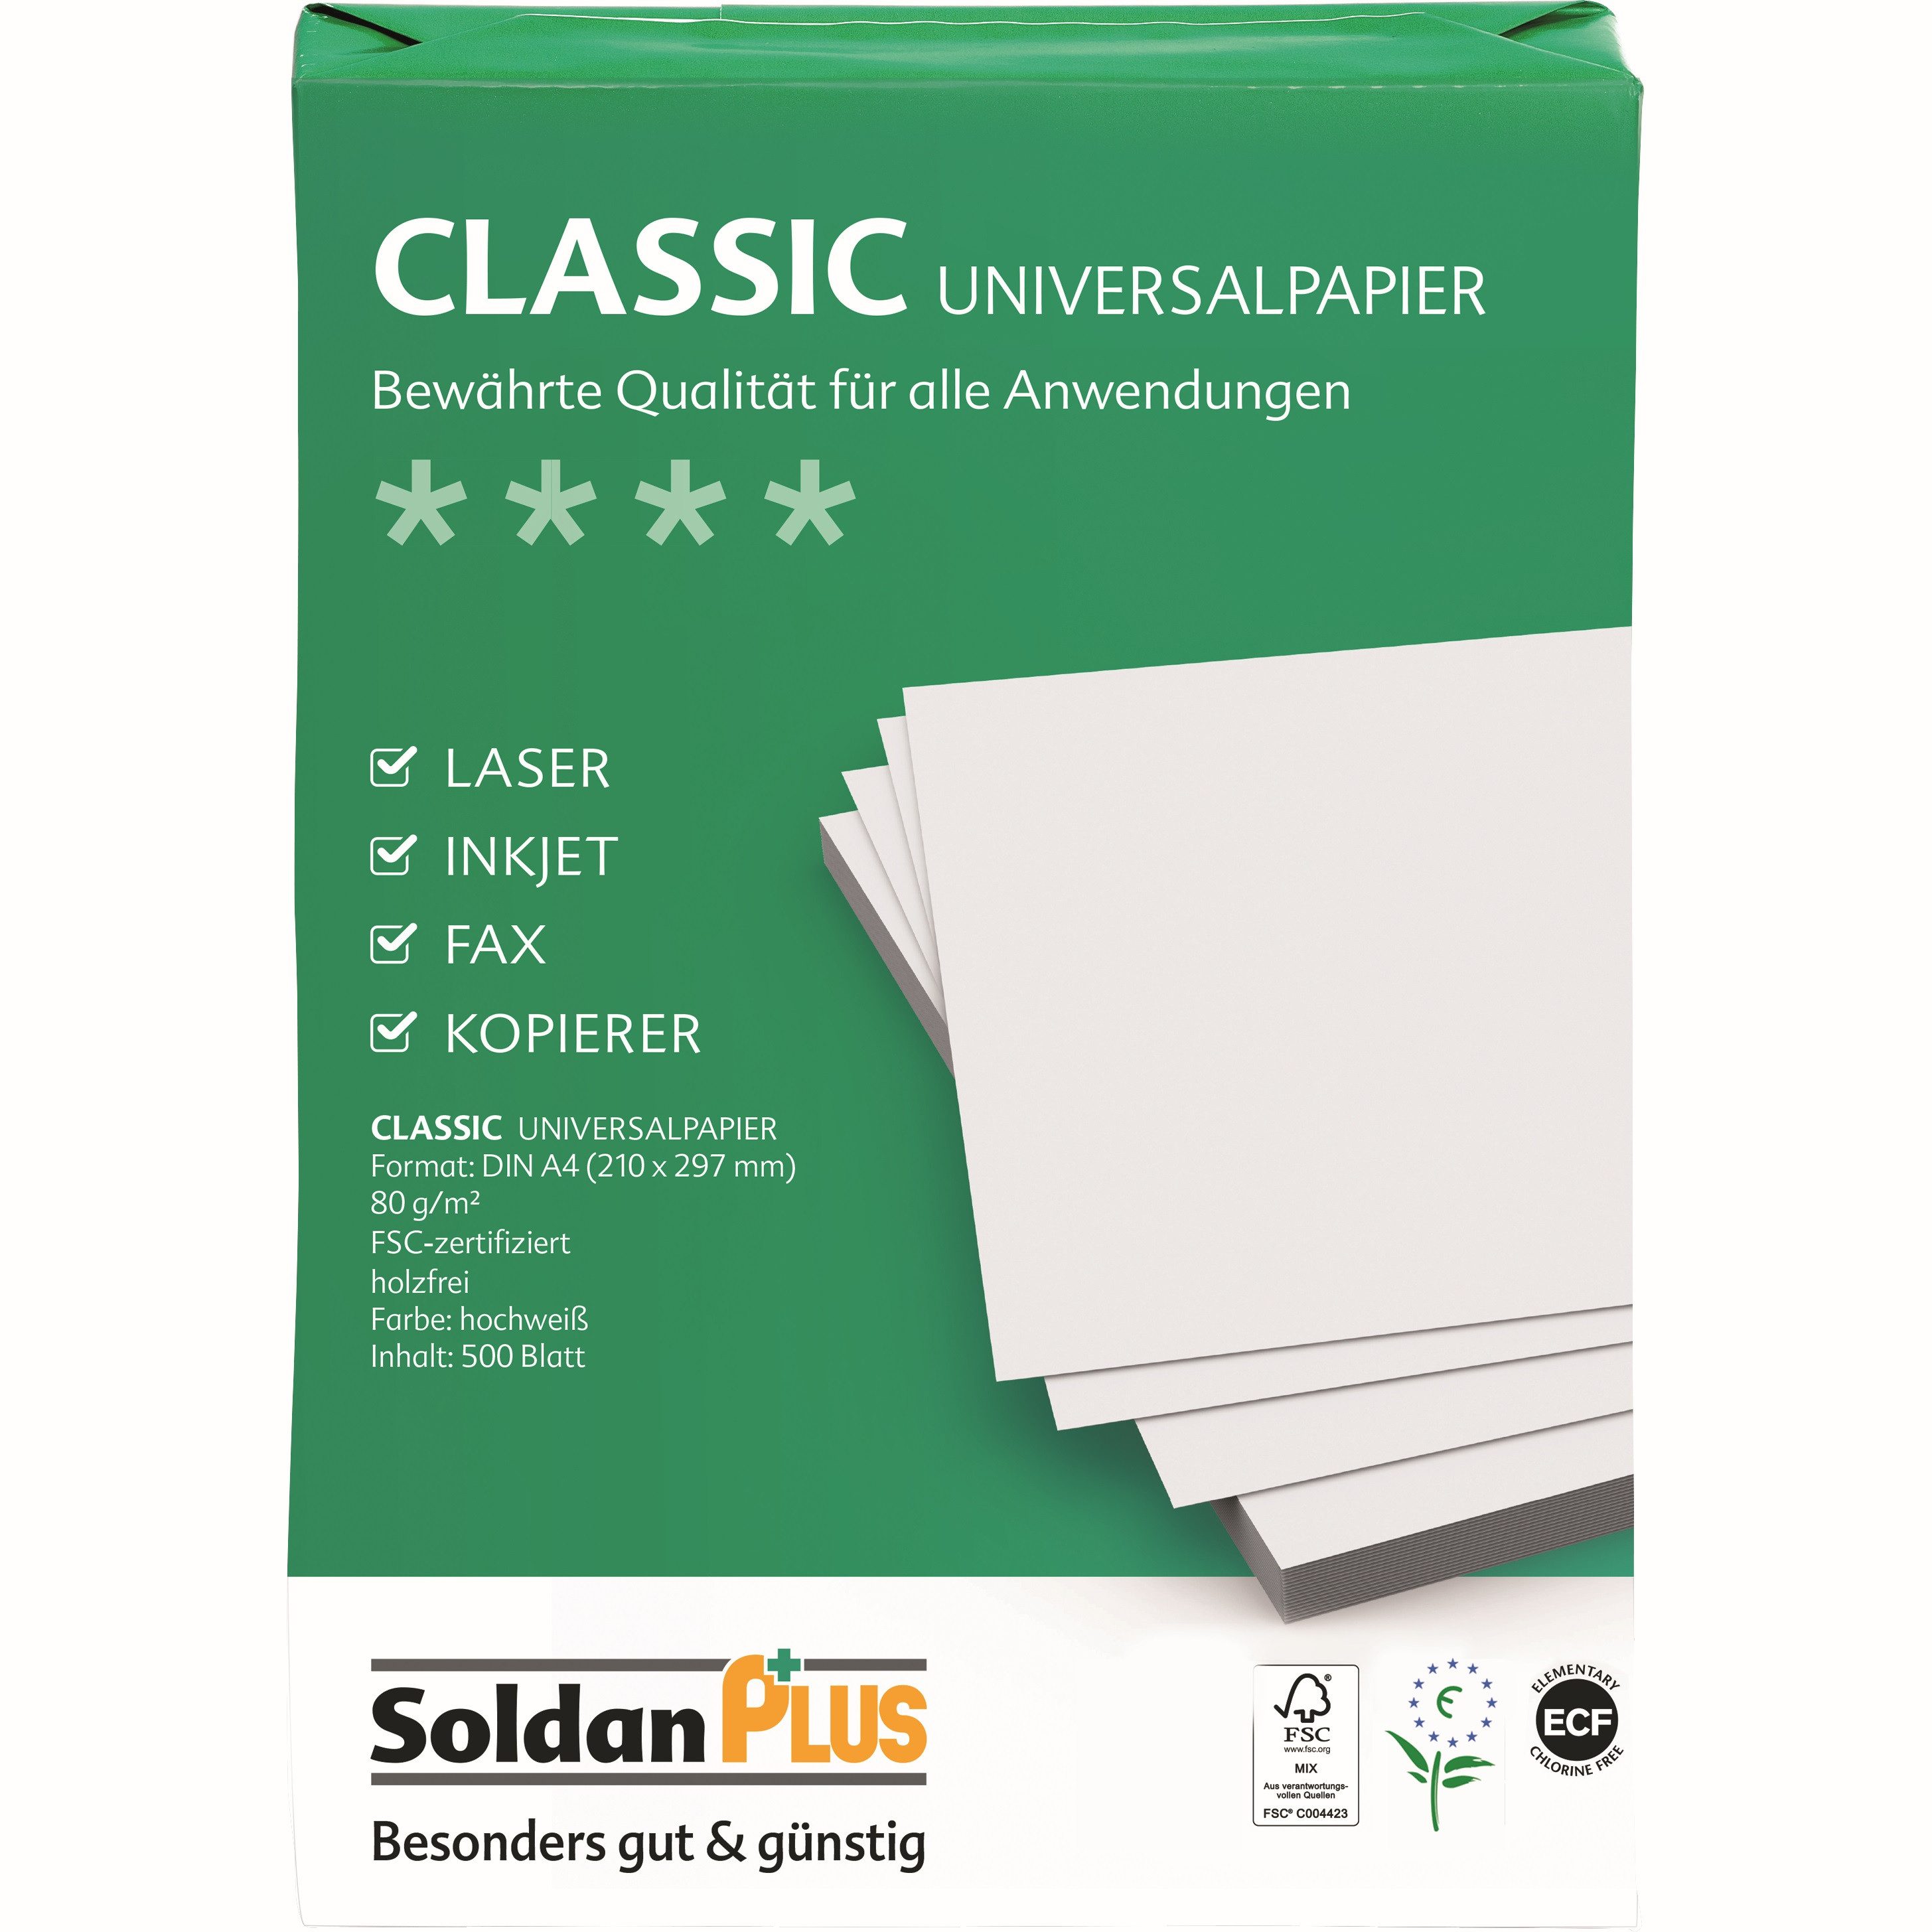 NO NAME Kopierpapier SoldanPlus Kopierpapier CLASSIC, DIN A4, 80 g/m², Pack: 500 Blatt